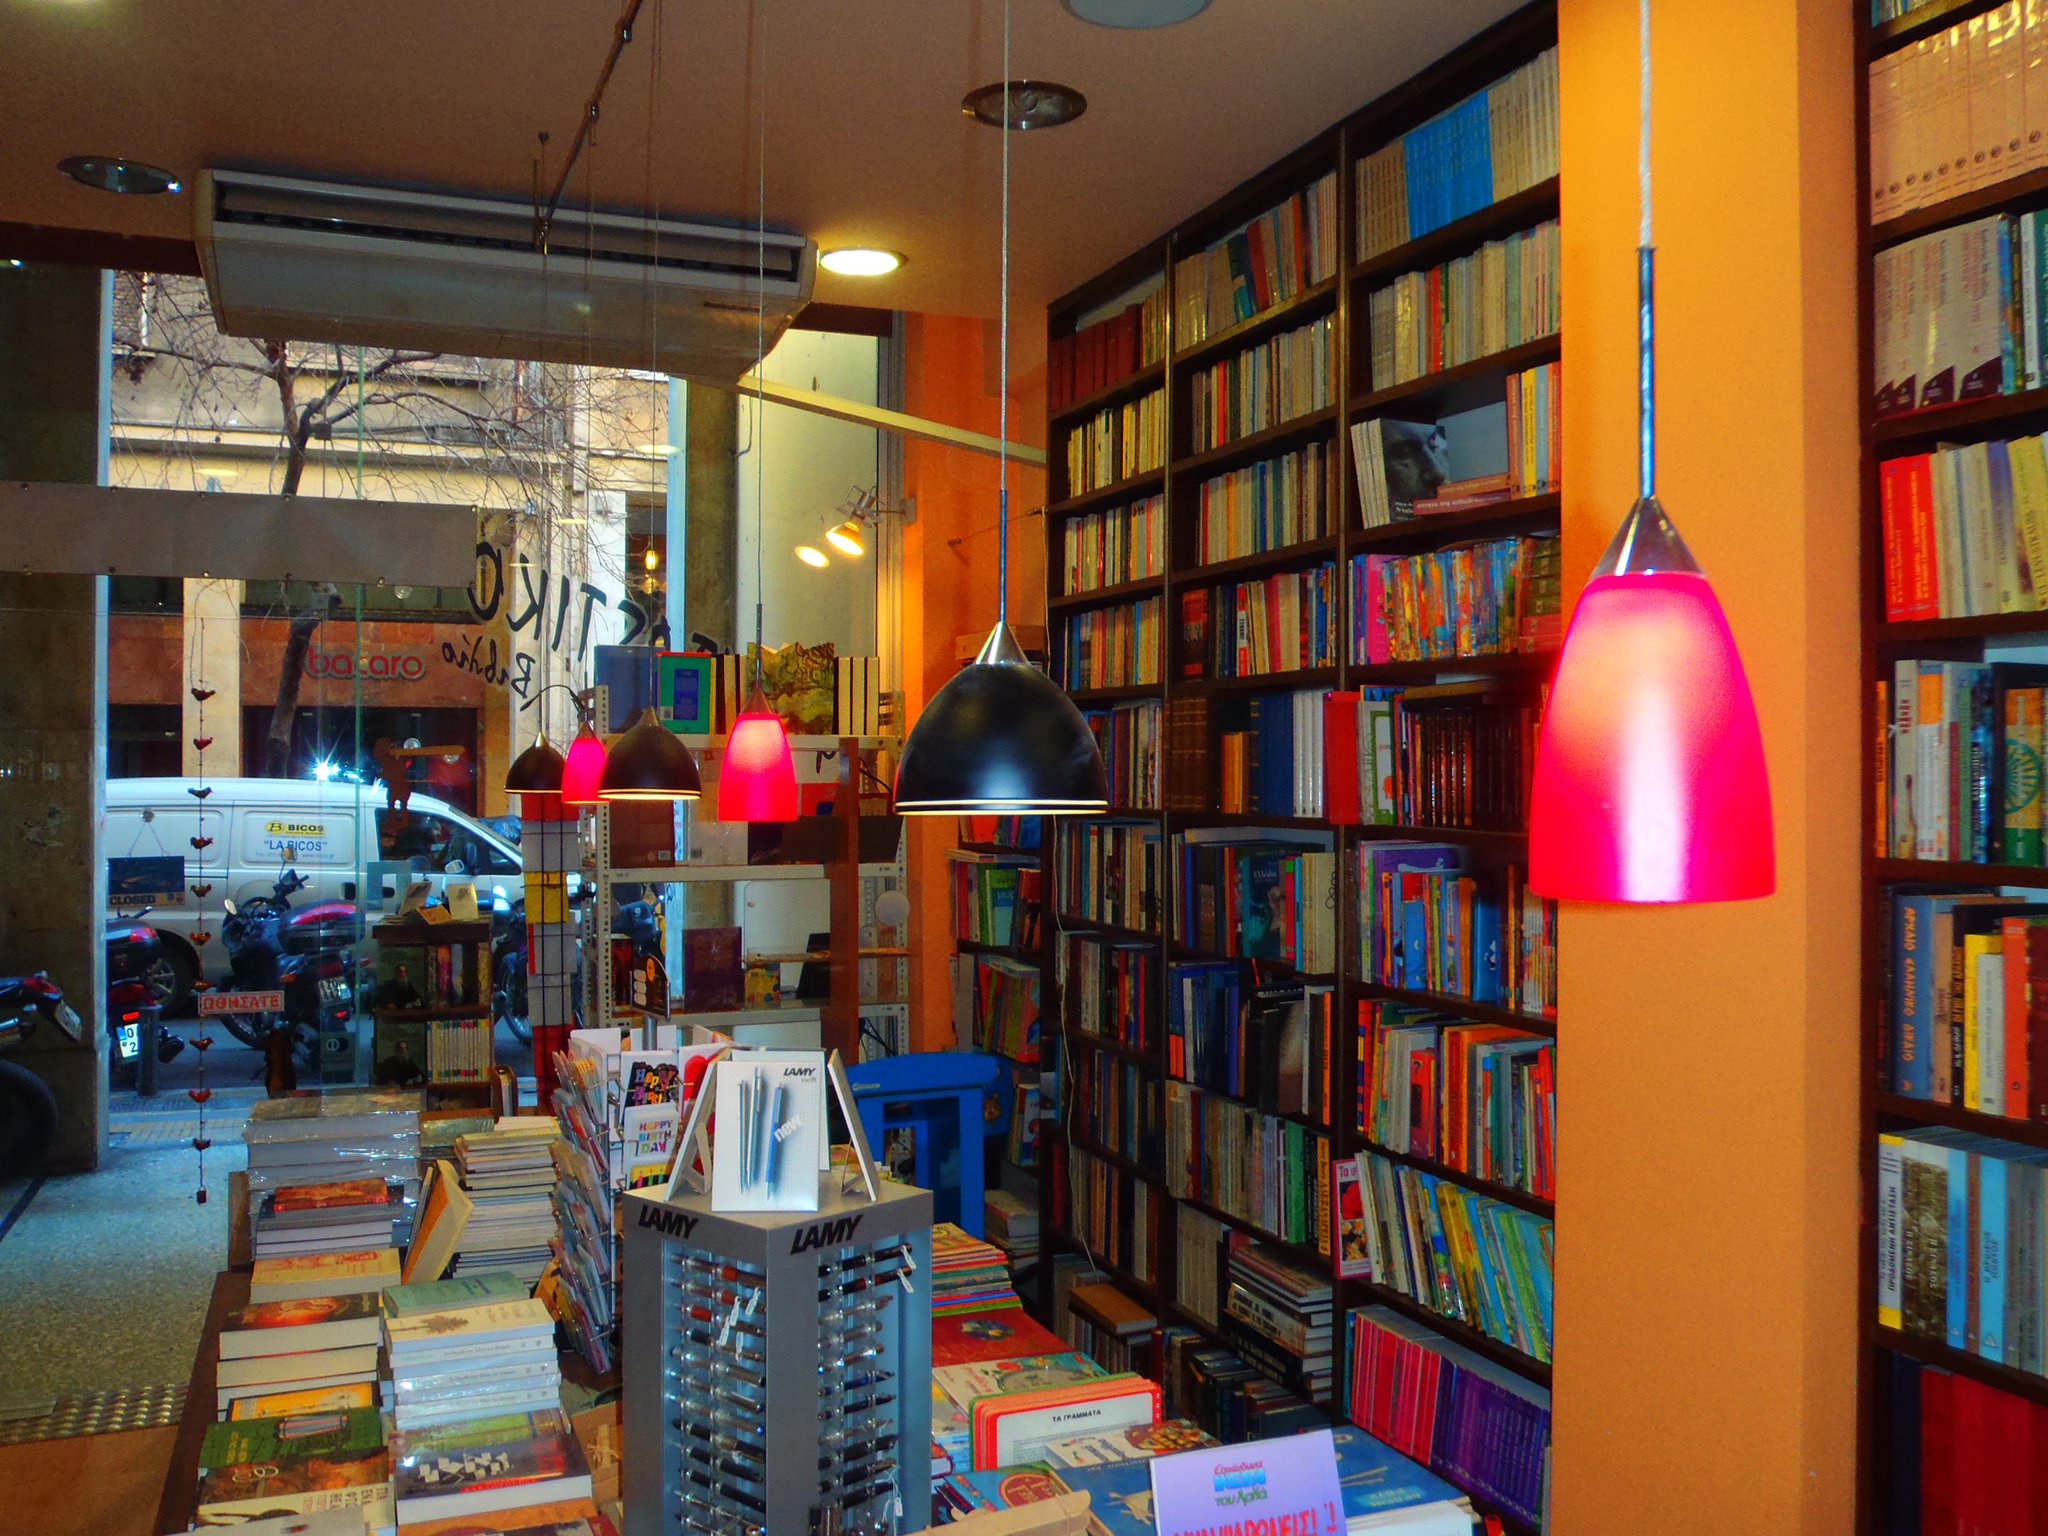 Βιβλιοπωλείο “Πιτσιλός” / “Pitsilos” bookstore